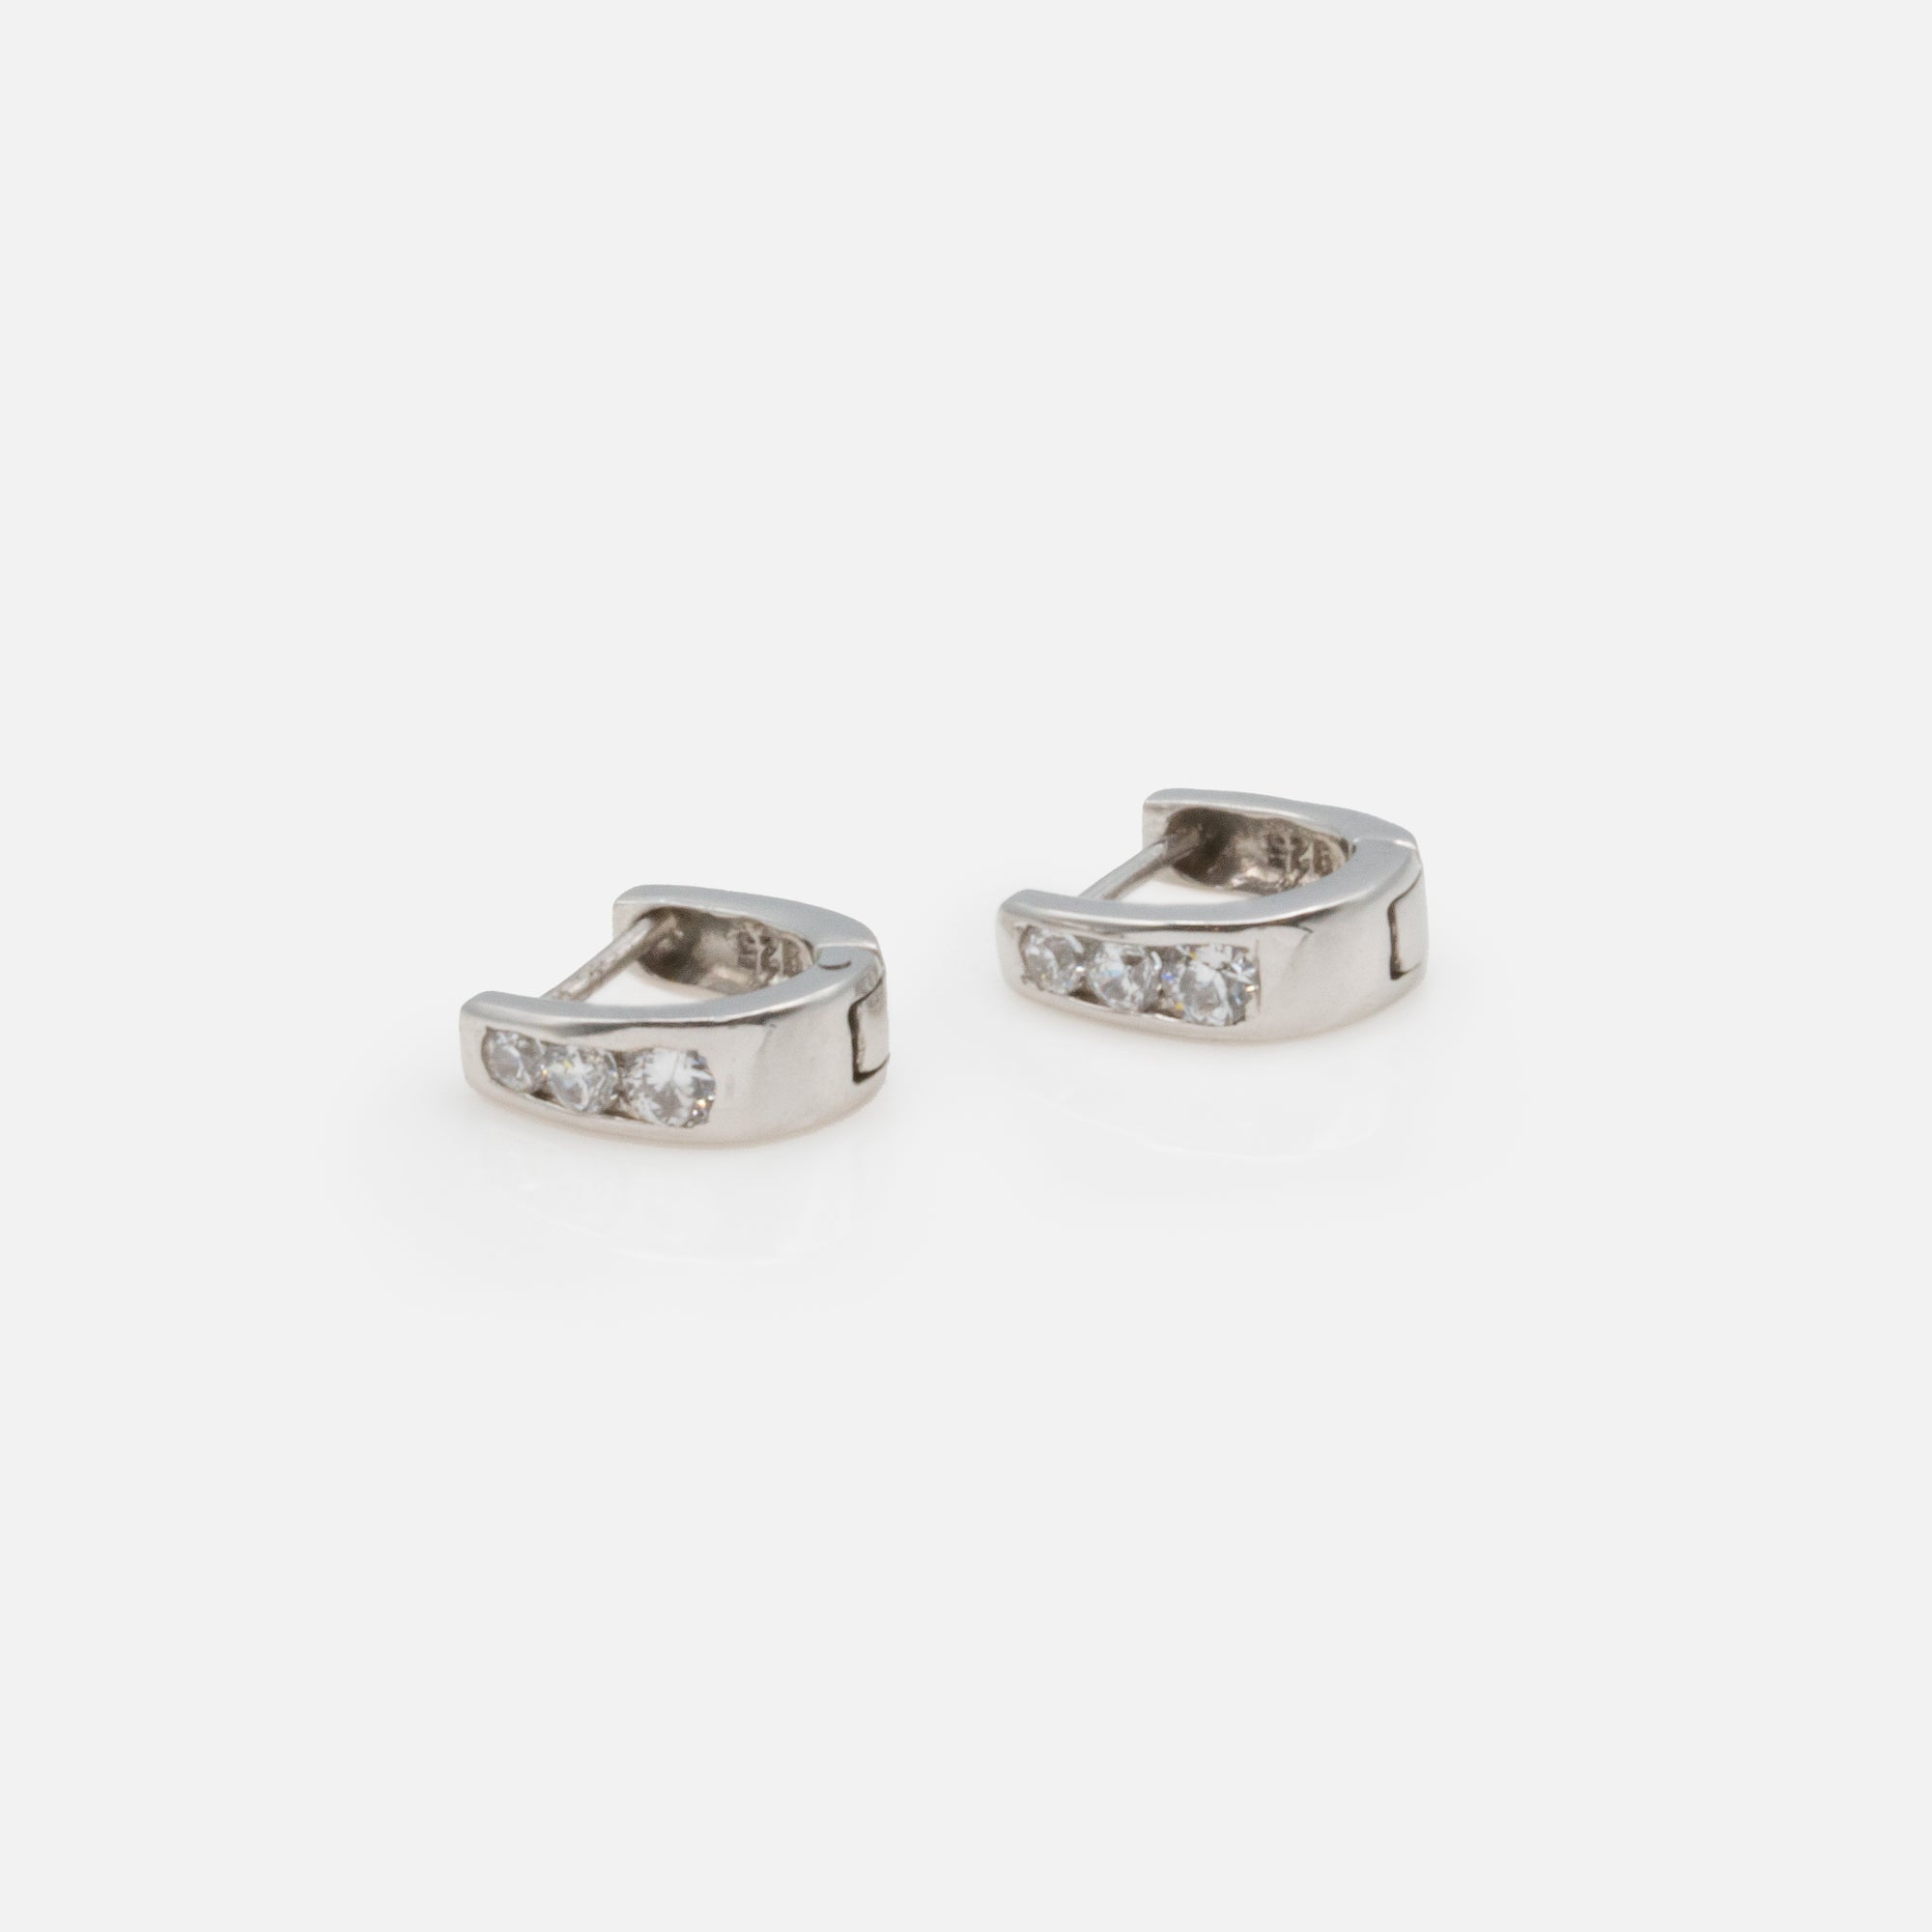 Hoop earrings with stones in sterling silver